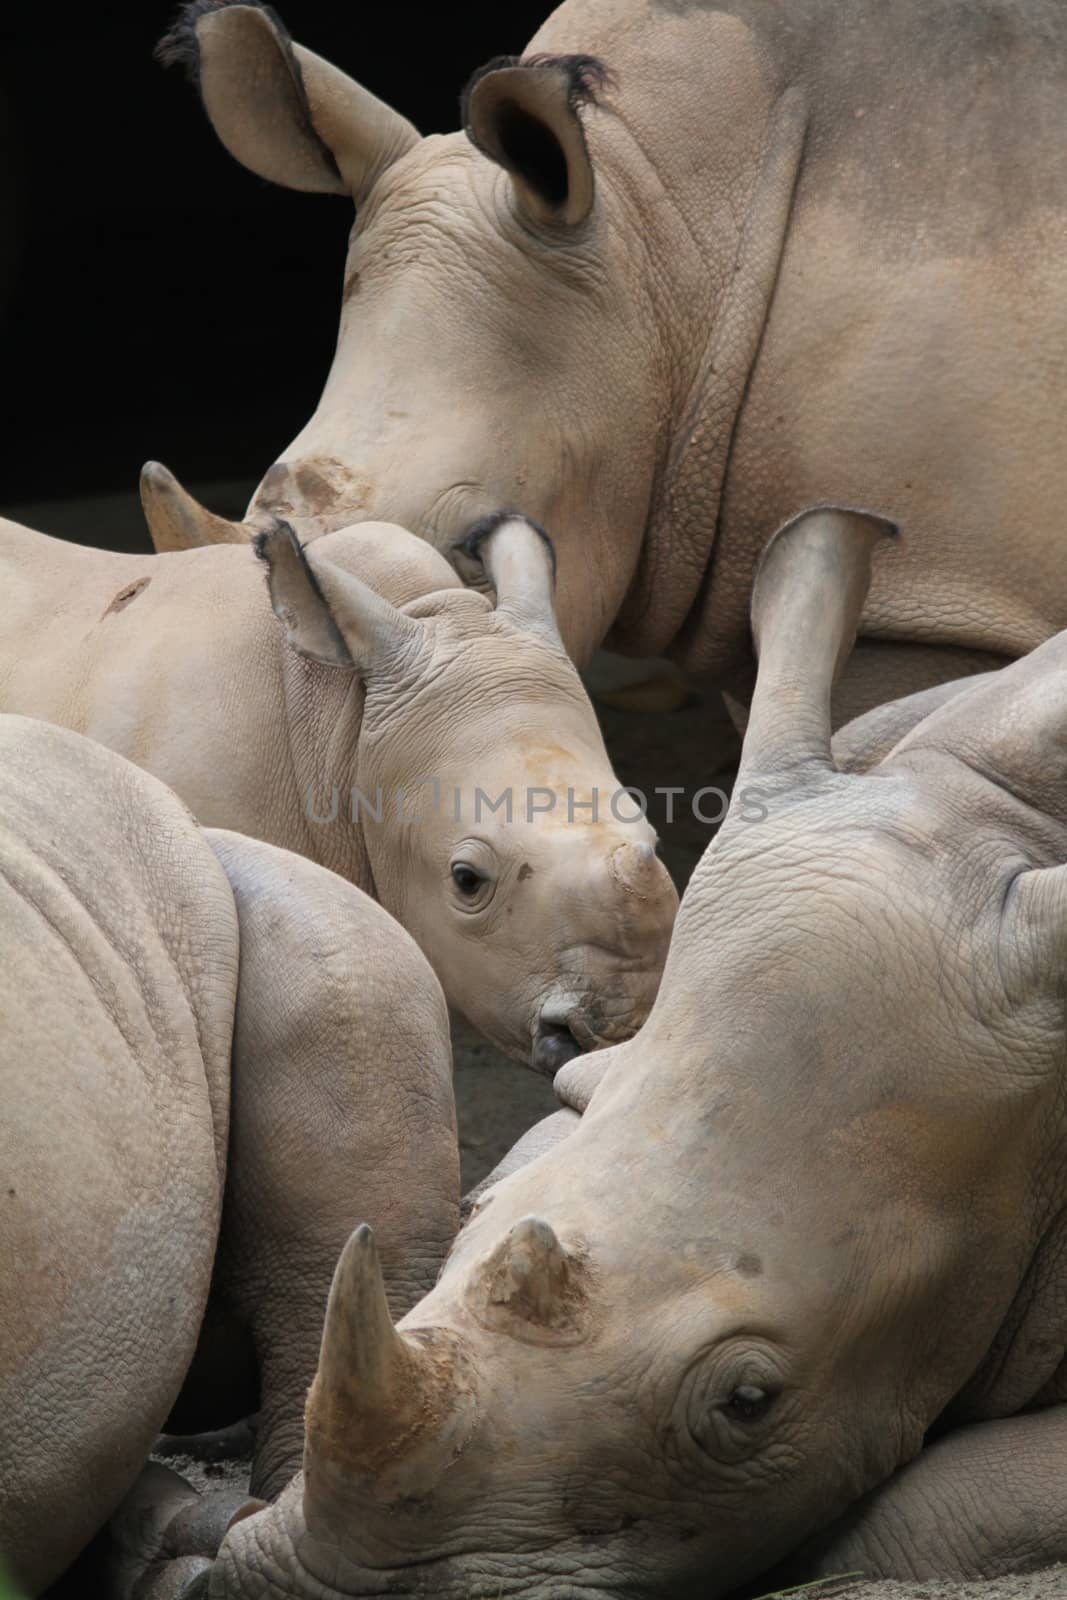 A shot of rhinos in captivity